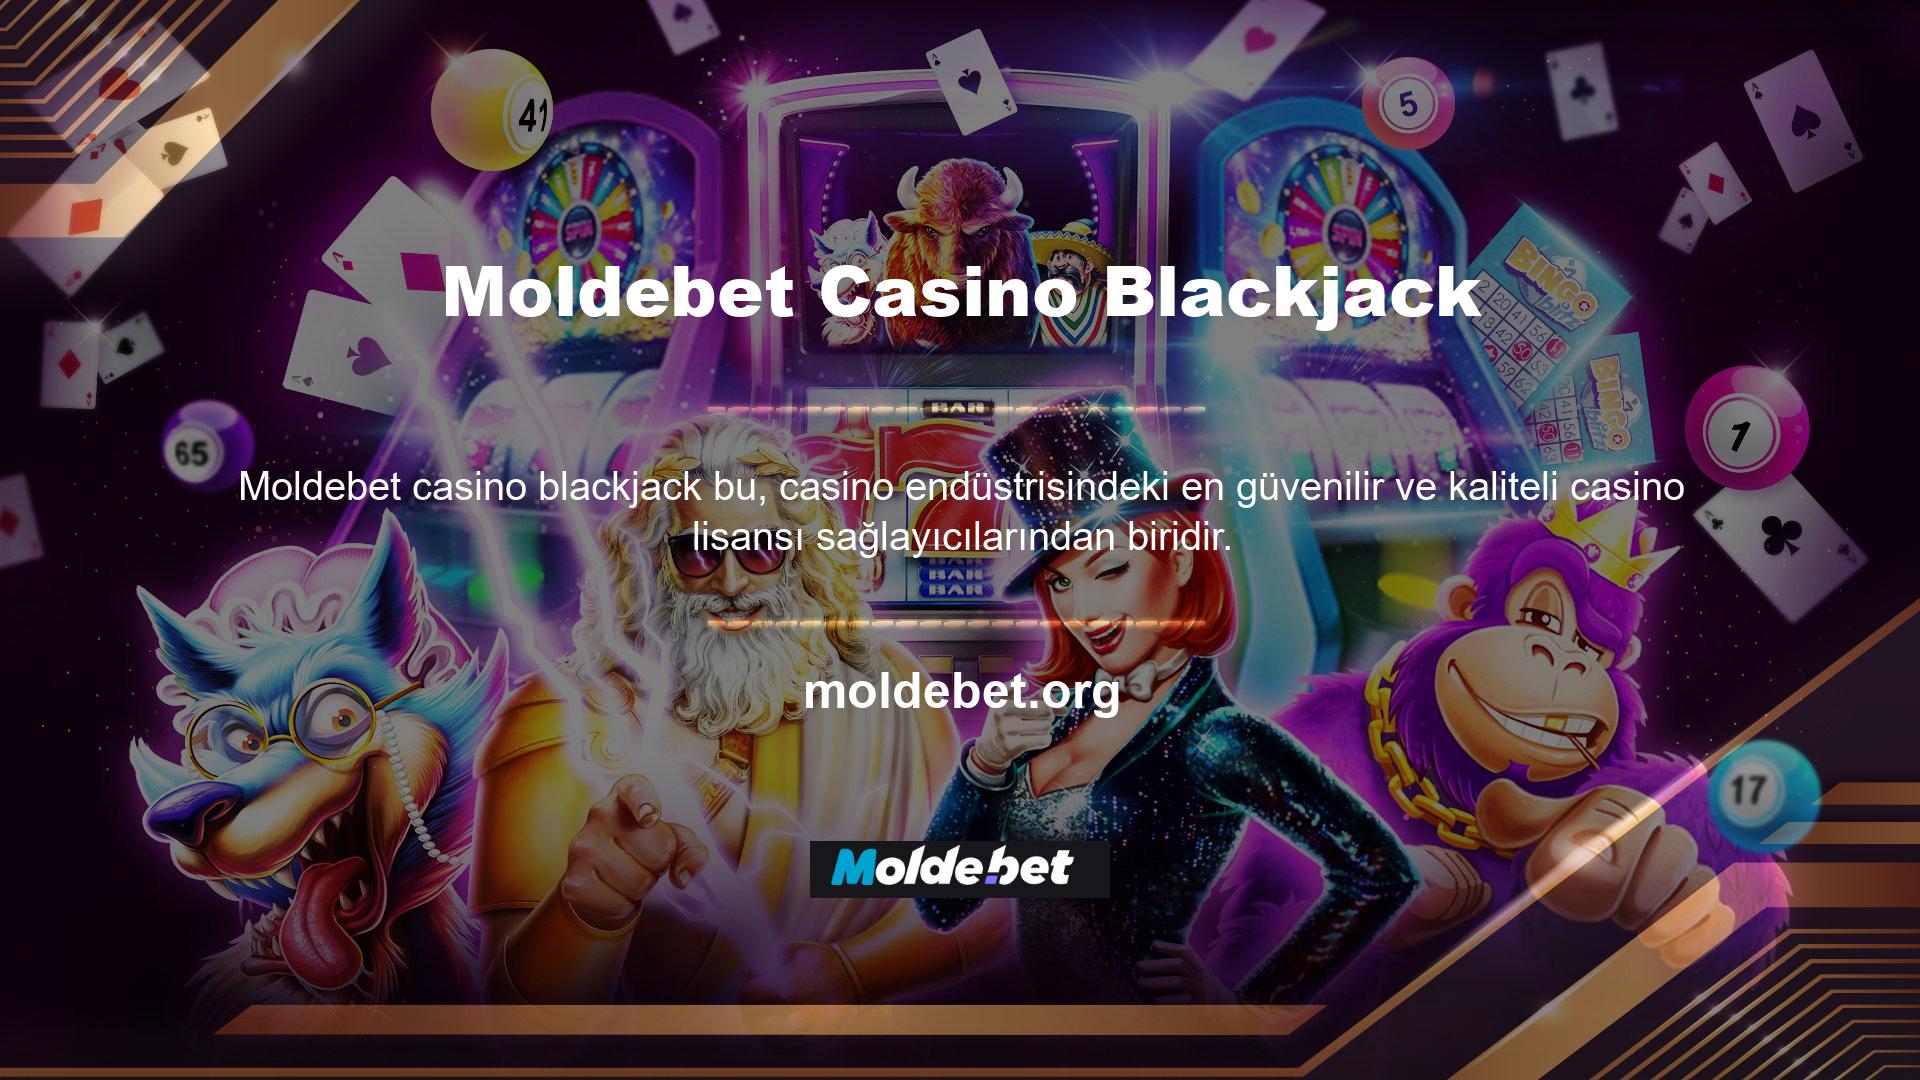 Bugün ünlü casino ve Moldebet casino blackjack casino web sitelerine bakarsanız, birçoğunun casino lisansı kredilerini tercih ettiğini göreceksiniz